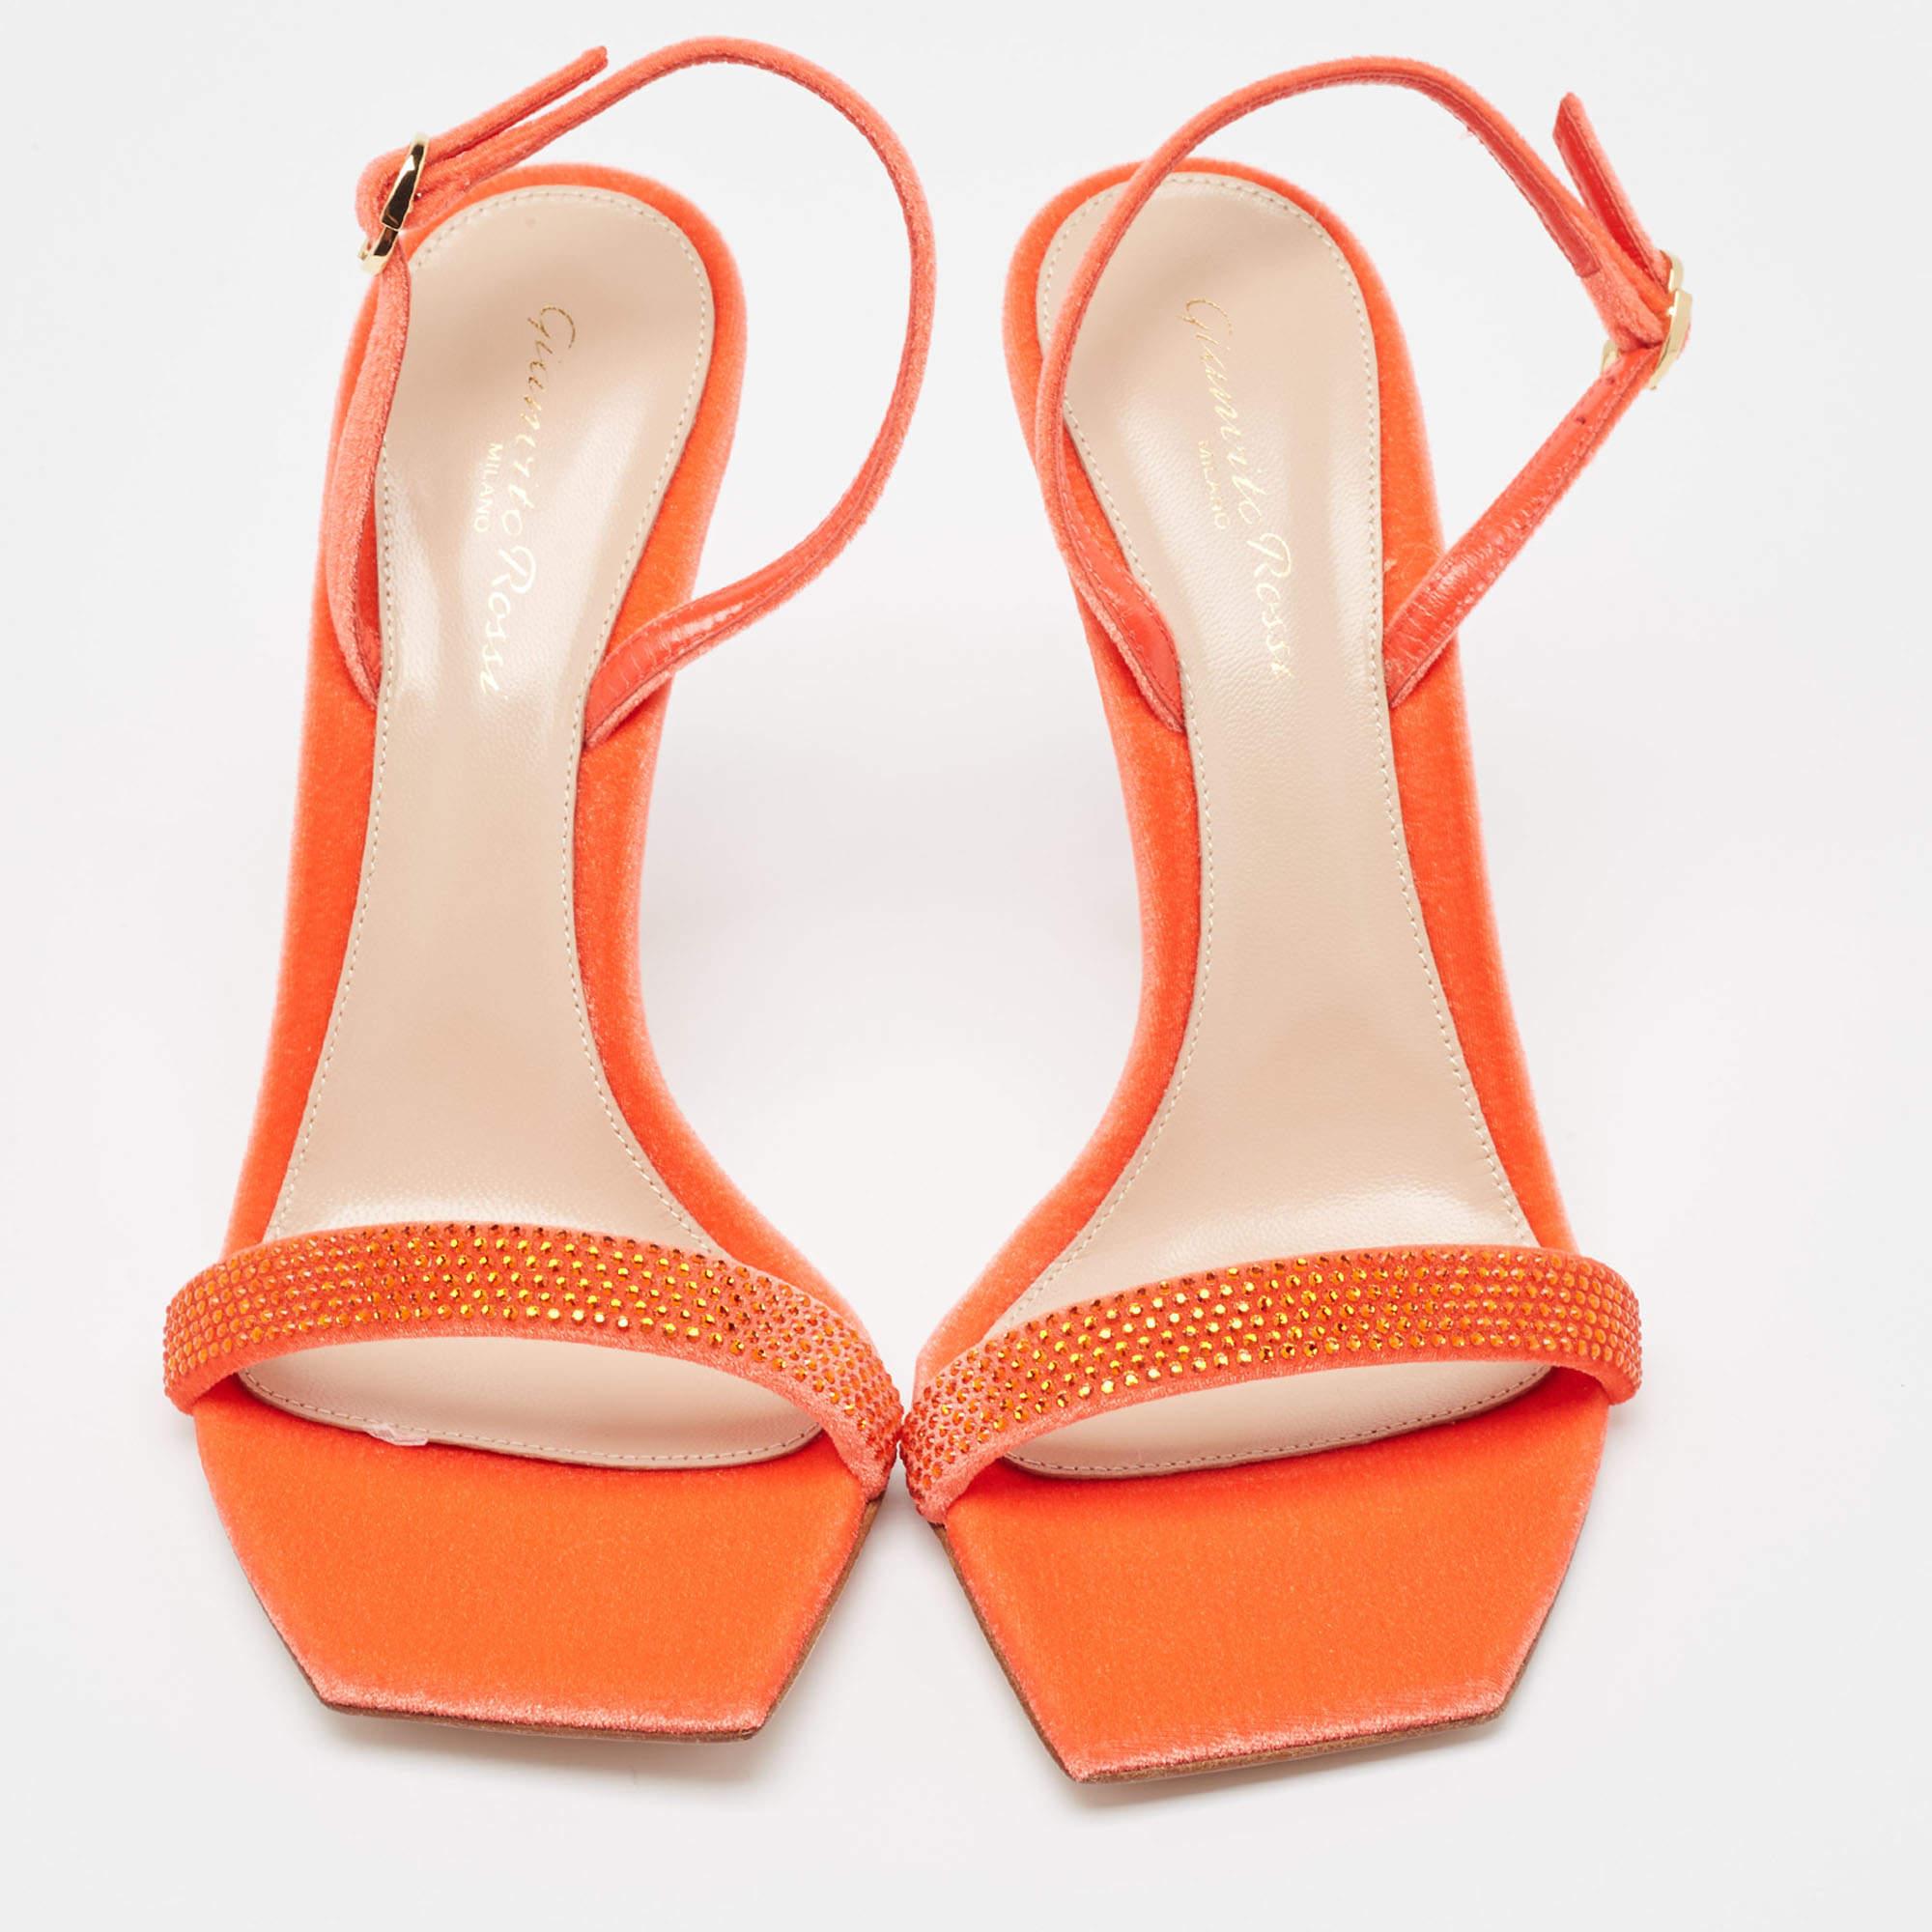 En velours rouge vibrant, les sandales Gianvito Rossi exsudent un charme confiant. De délicates brides enveloppent gracieusement le pied, tandis qu'un talon robuste assure stabilité et style. Avec un savoir-faire impeccable et un design intemporel,